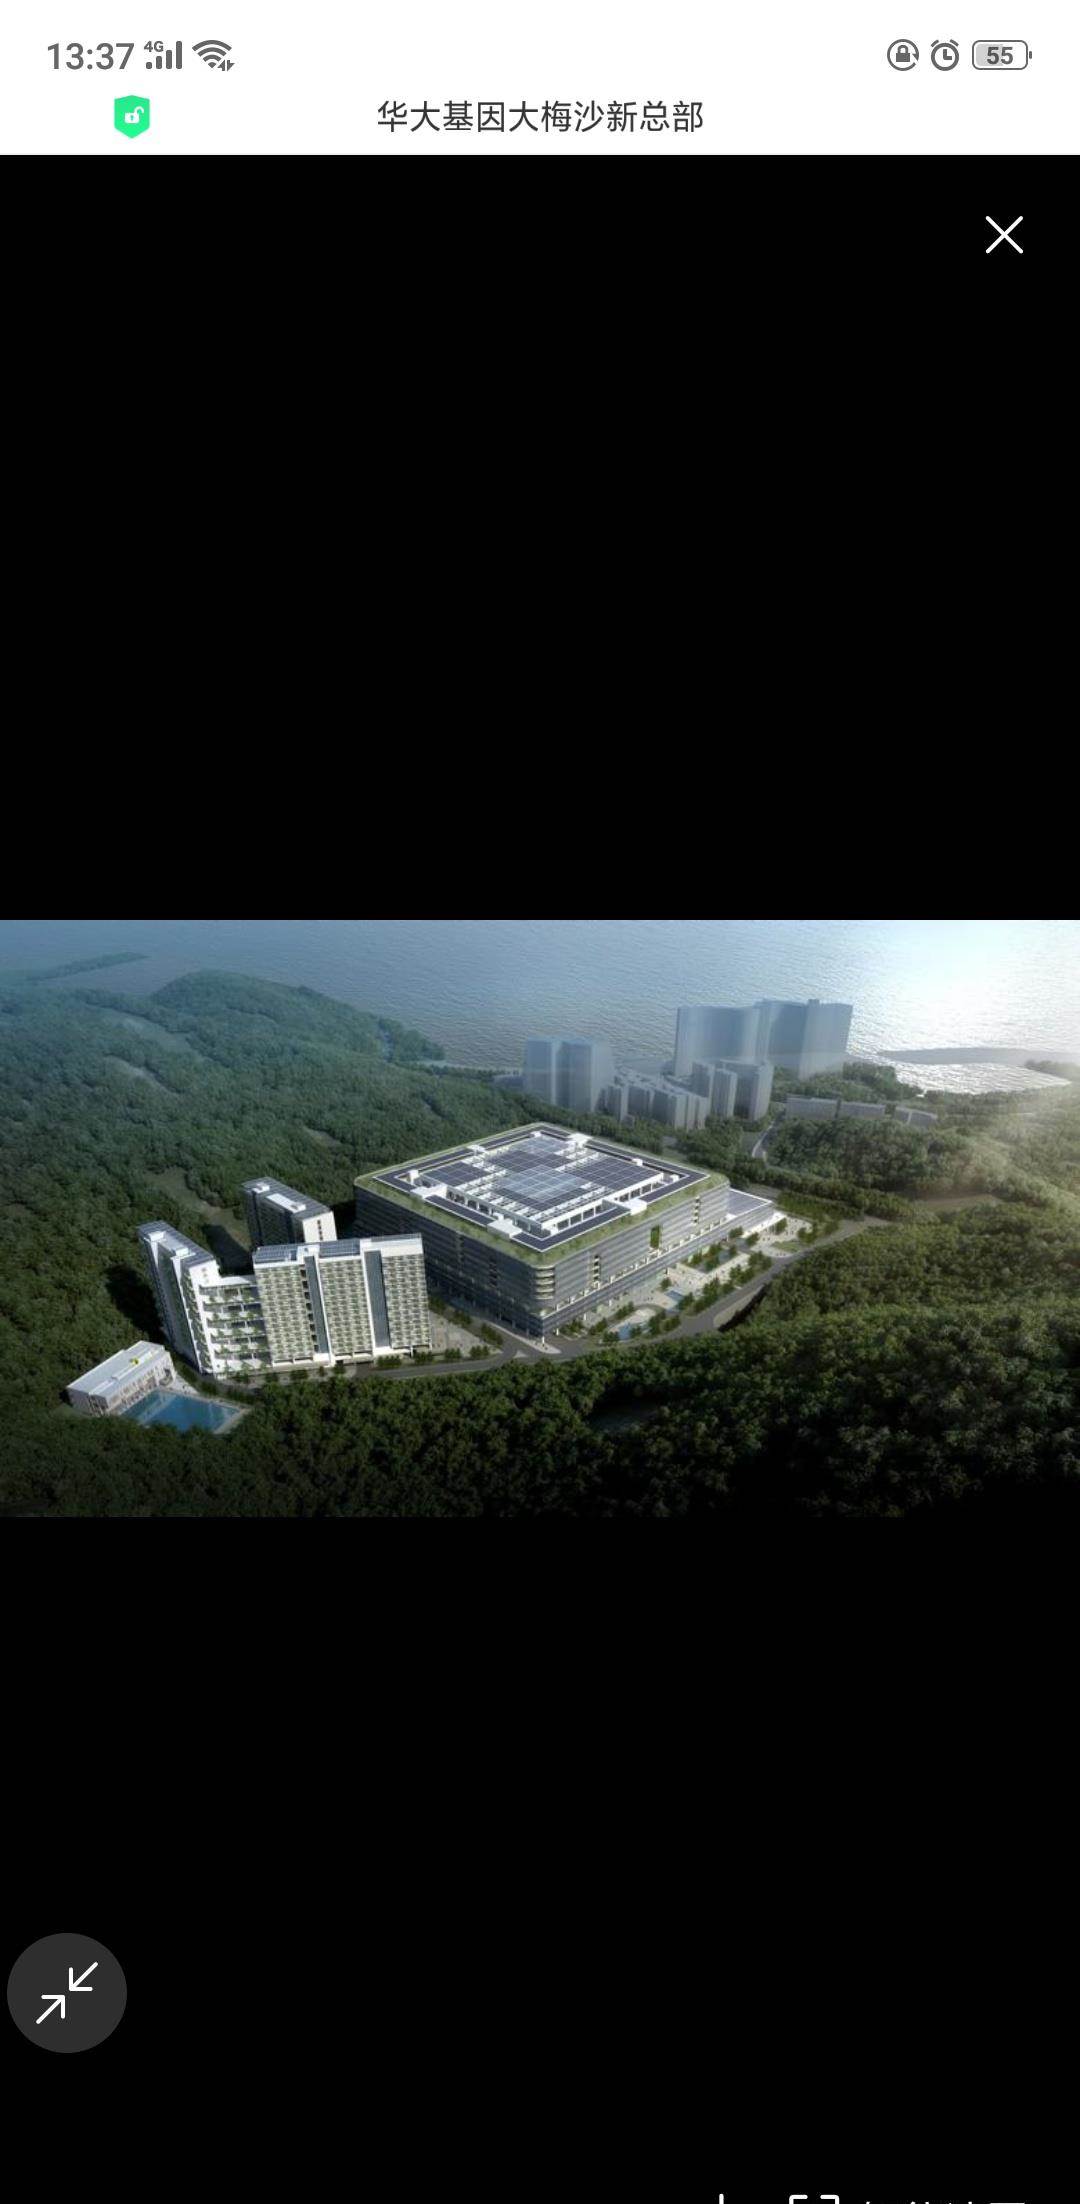 华大基因位于深圳大梅沙片区的总部大楼,10万余平方米的基因工厂,我想